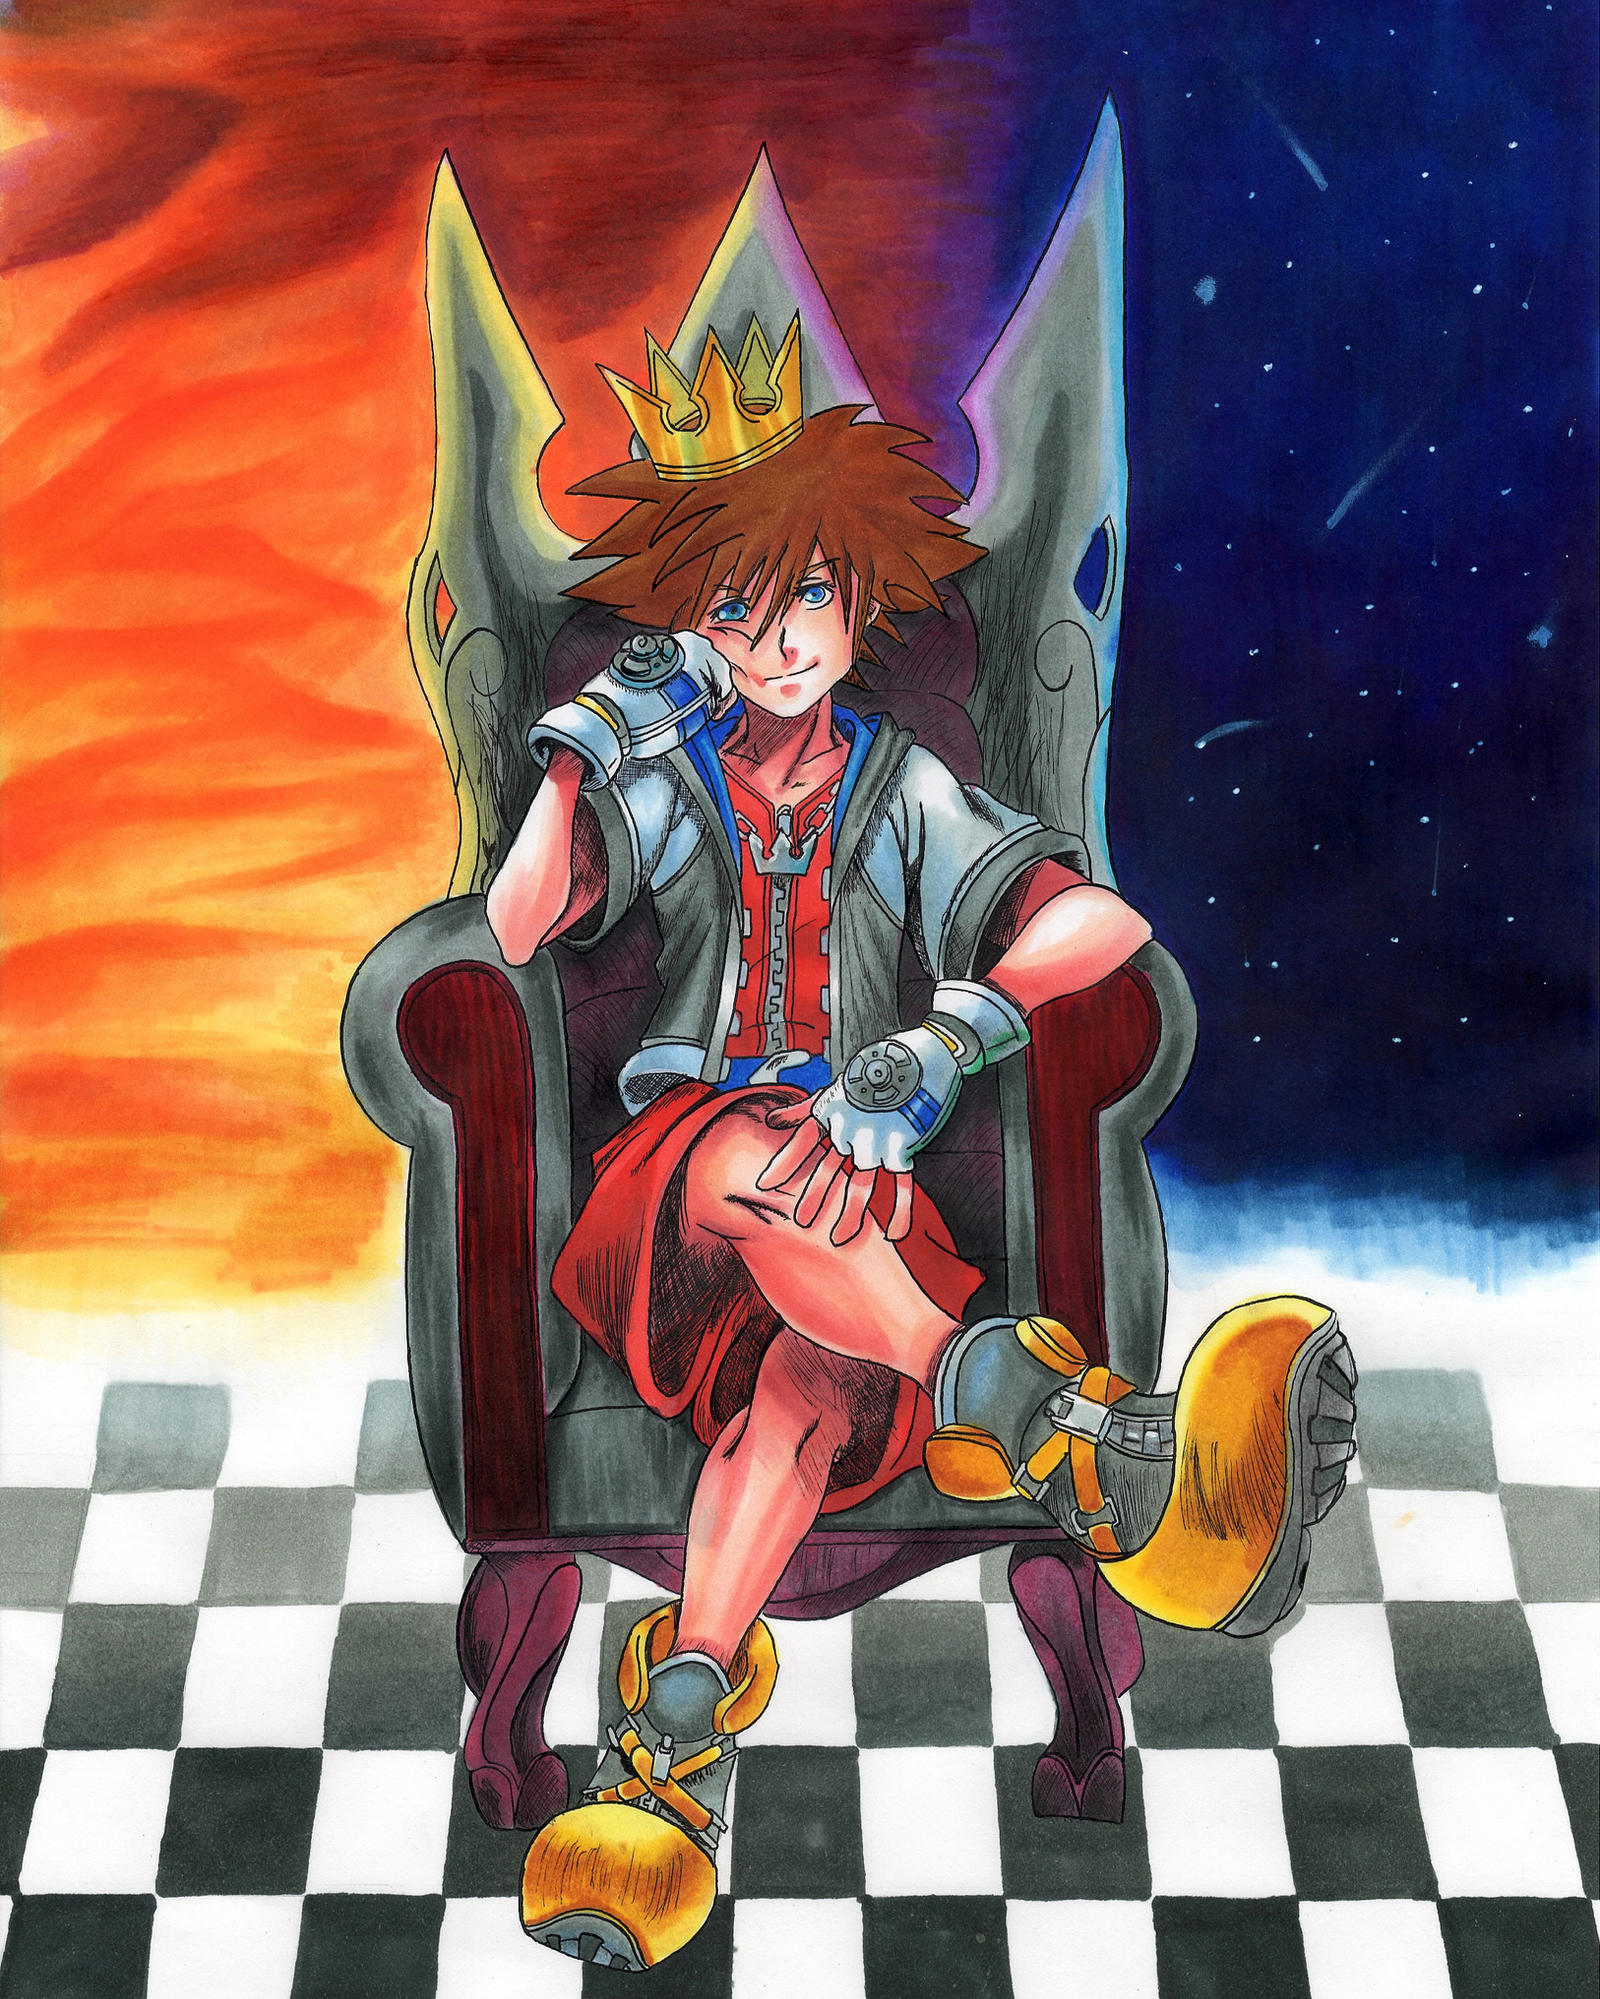 Kingdom Hearts - Sora Illustration (Scan Ver.) by blaazeit on DeviantArt